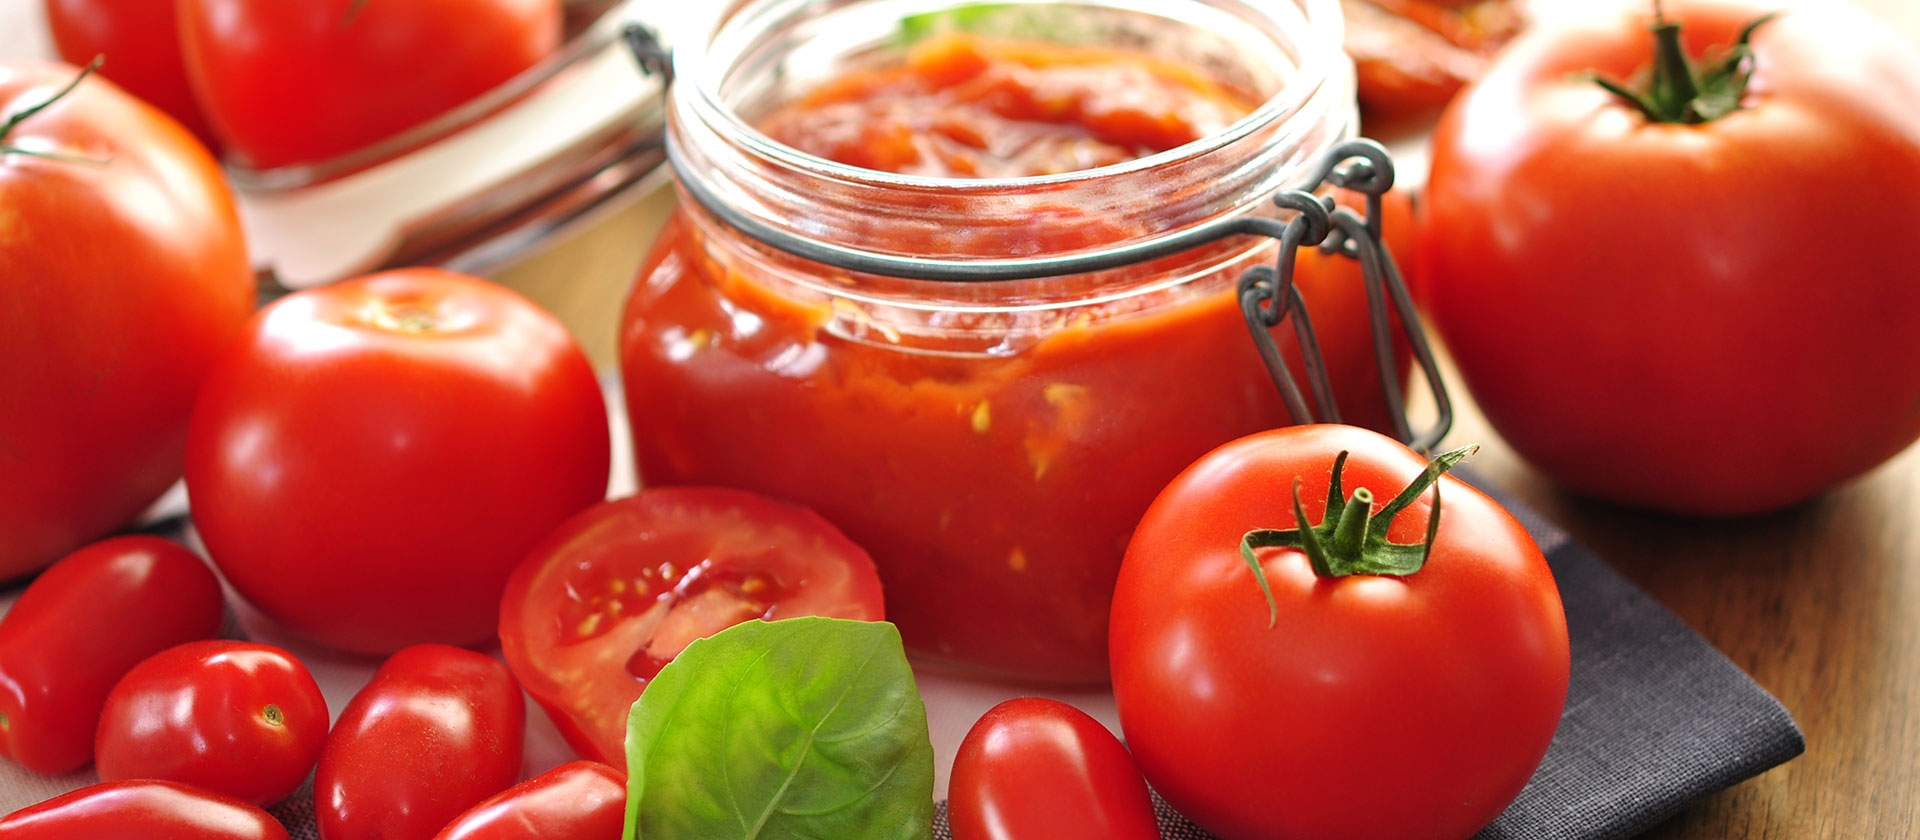 In einem Glas ist ein Tomatendip abgefüllt, drumherum liegen Tomaten